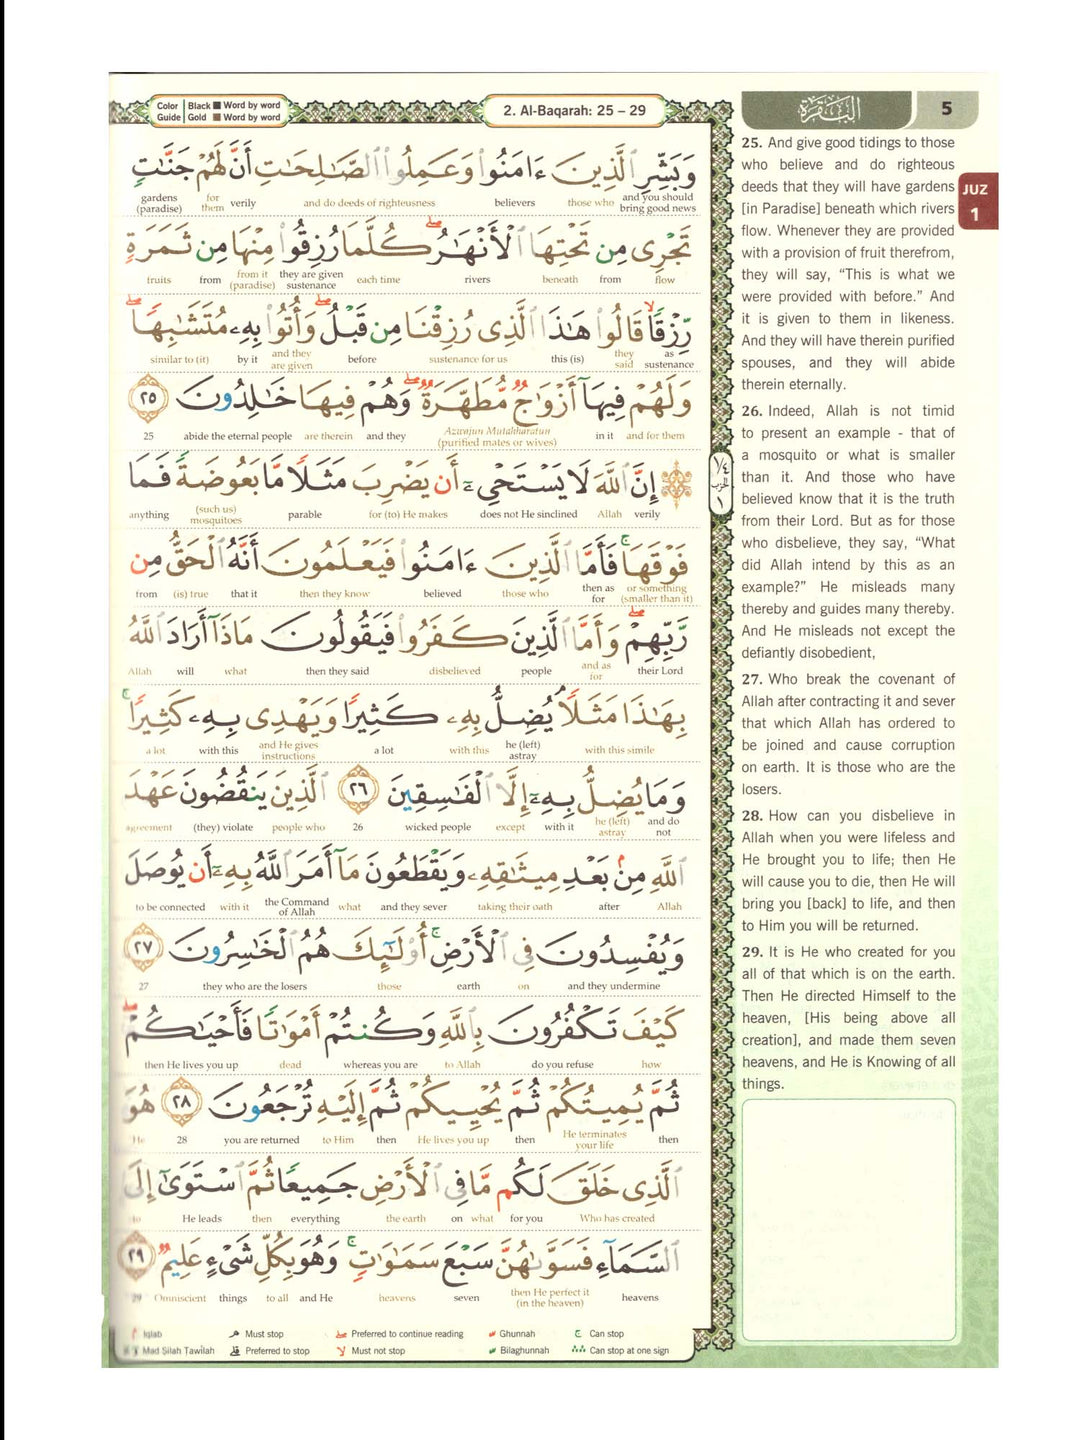 Al Quran Al Karim - Word By Word Translation - A5 Small